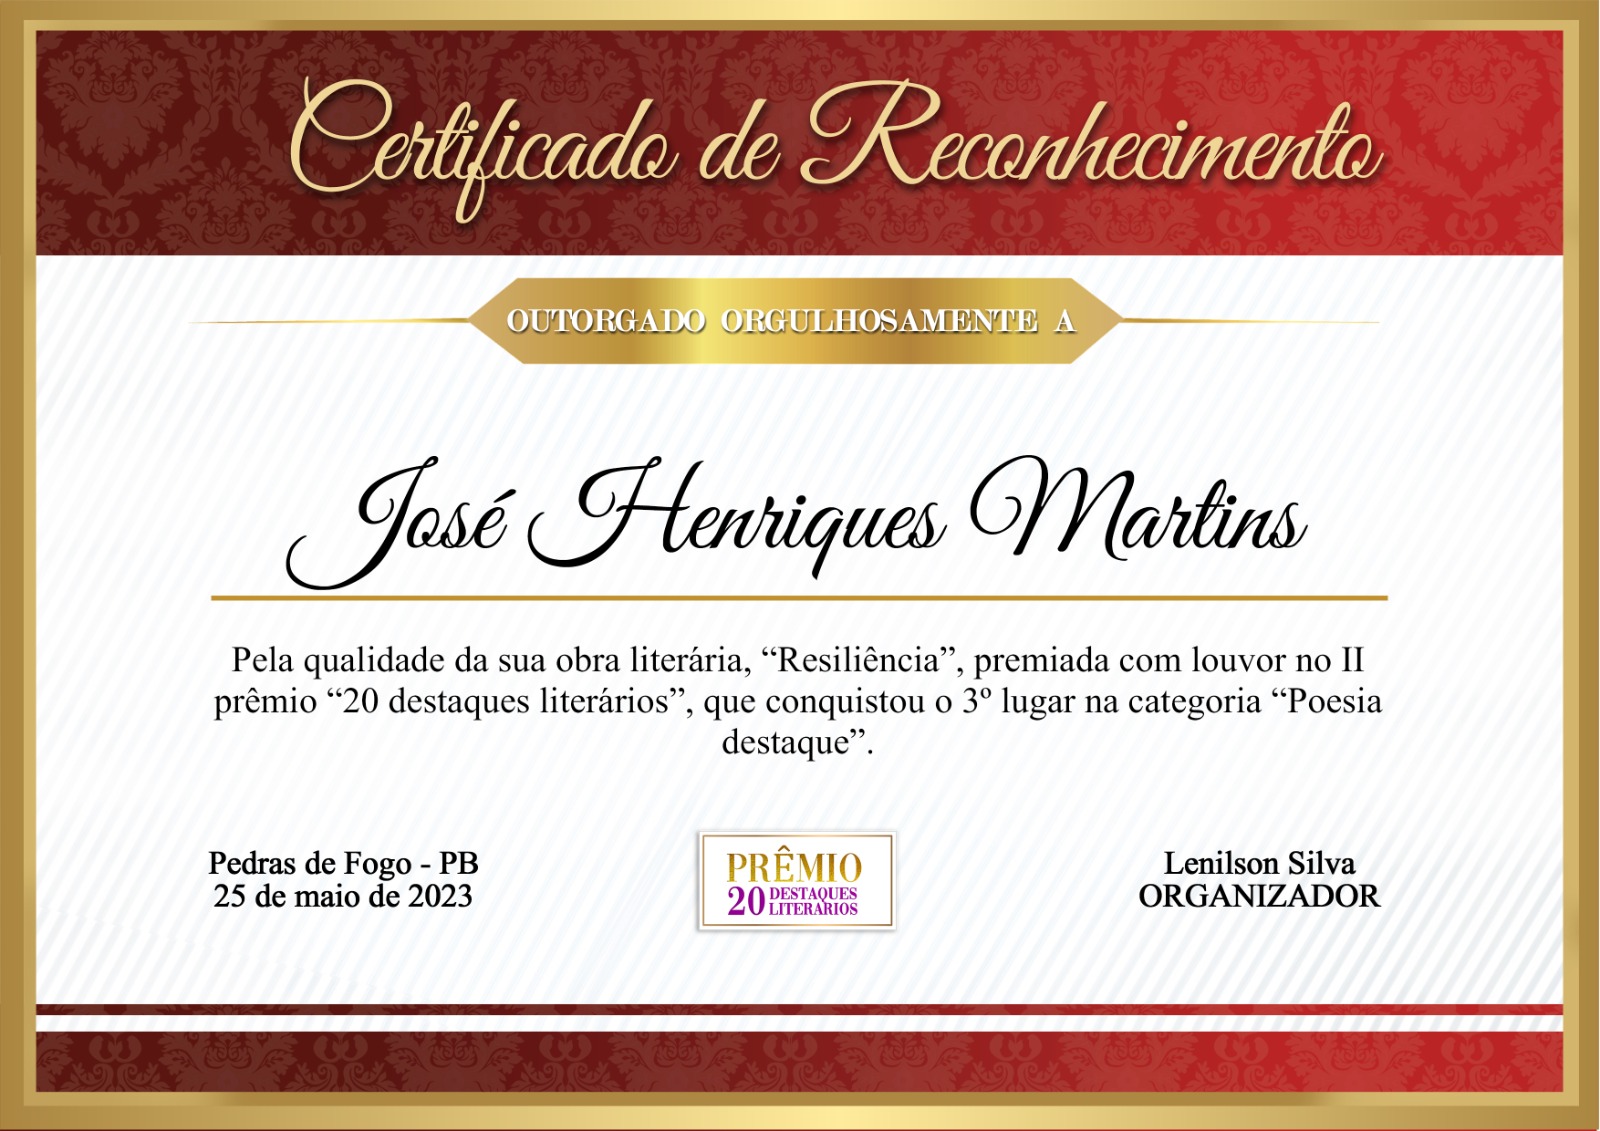 Certificado de reconhecimento do Prêmio 20 Destaques Literários